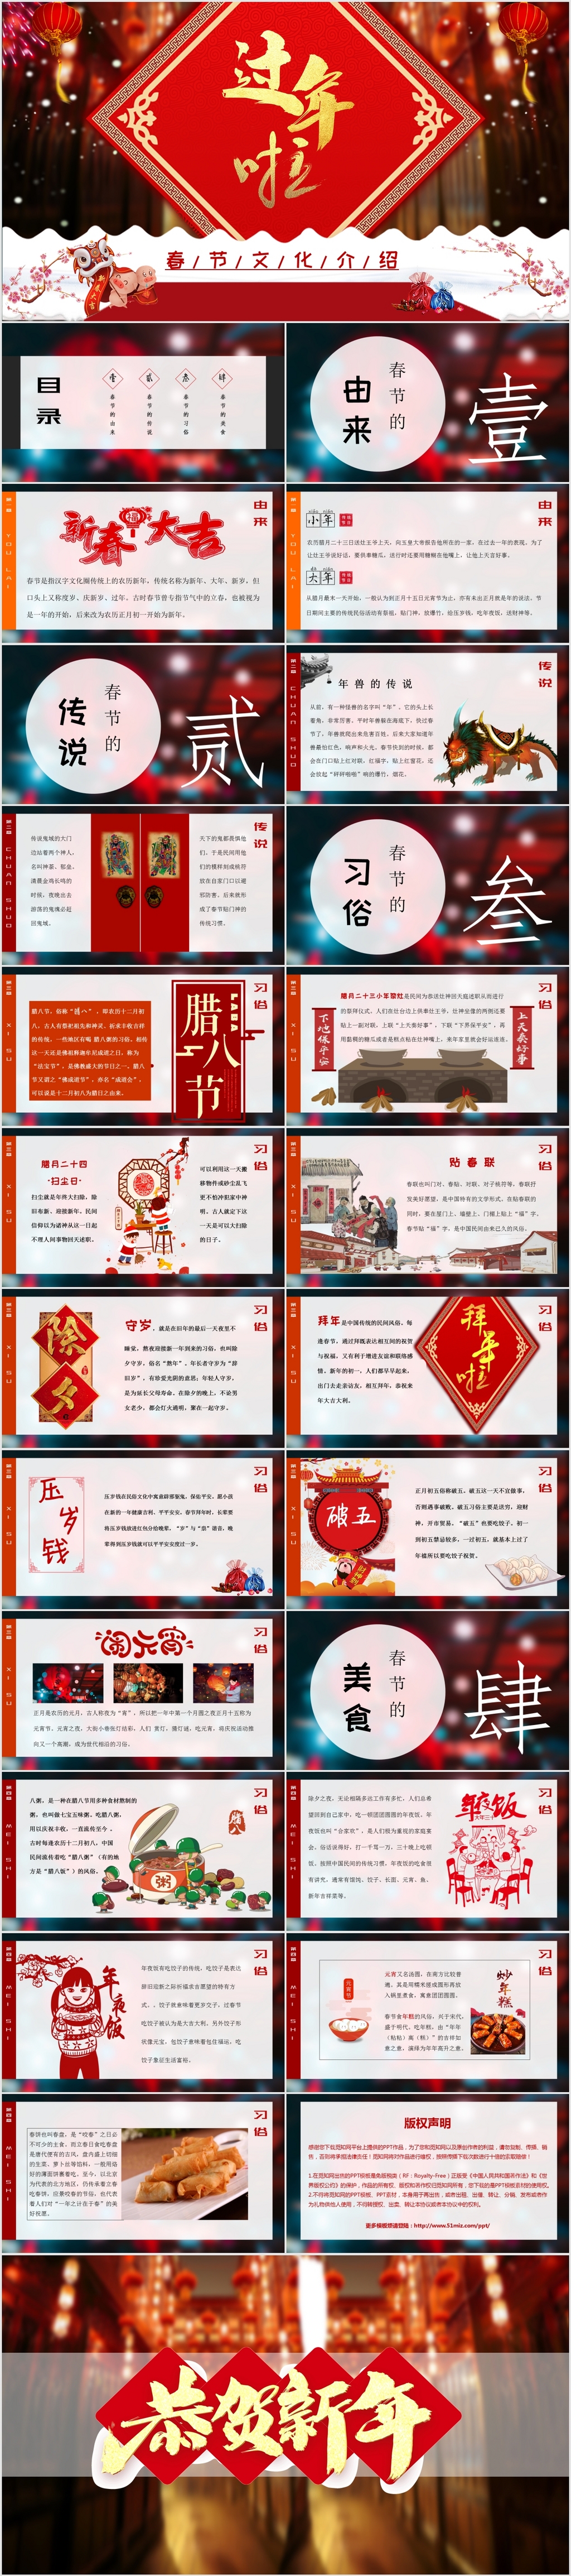 传统节日2019中国红过年啦新年春节文化春节习俗介绍PPT模板